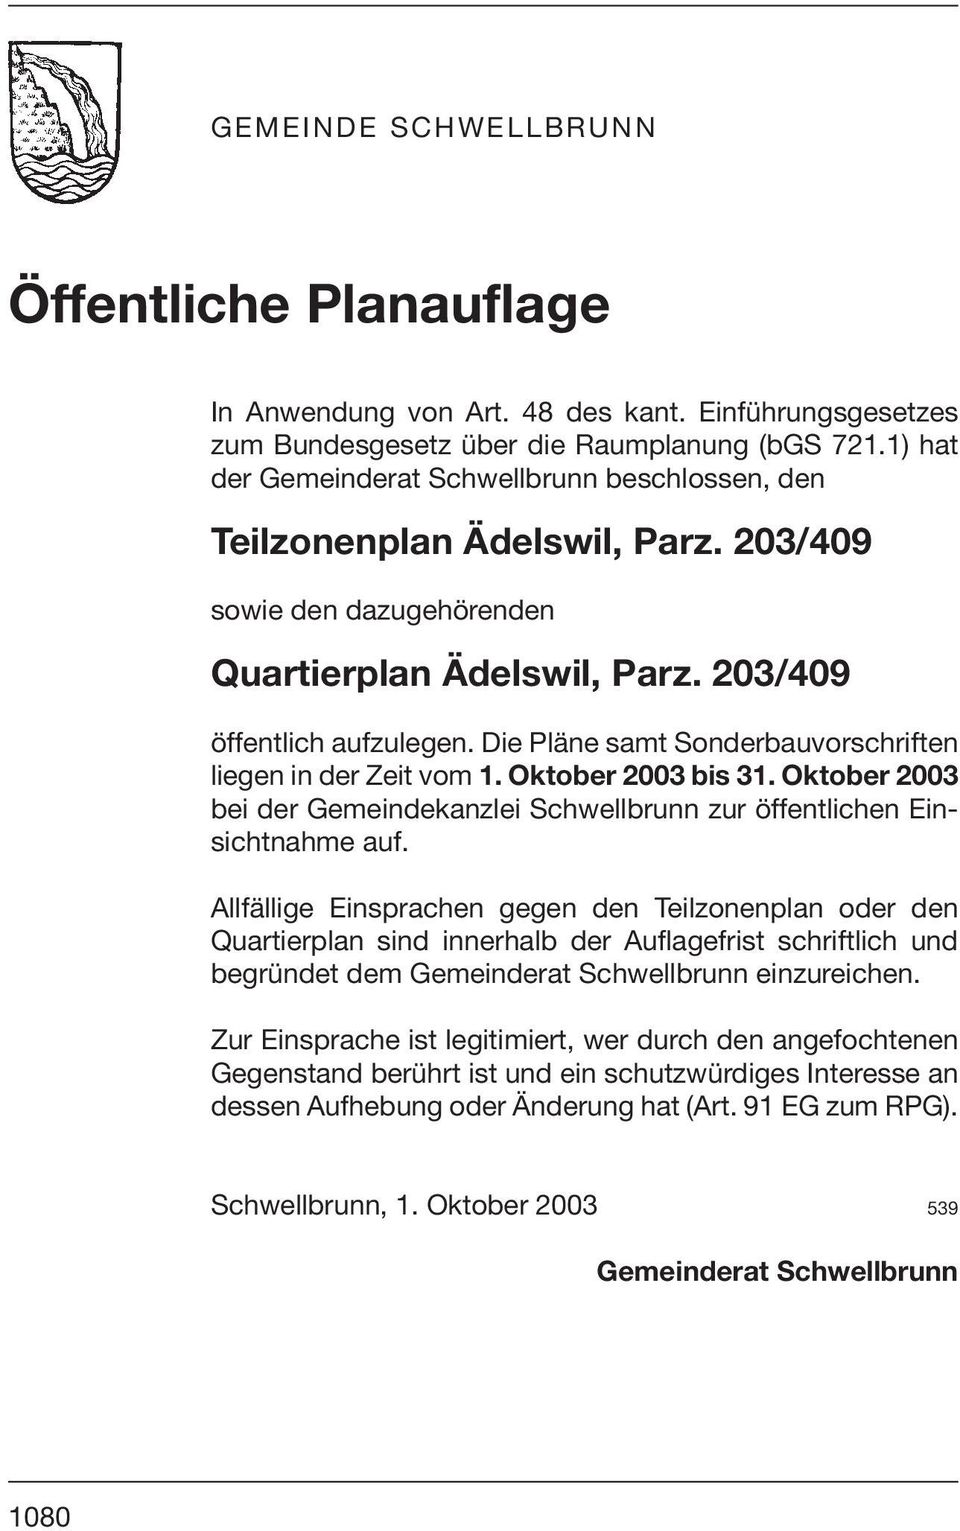 Die Pläne samt Sonderbauvorschriften liegen in der Zeit vom 1. Oktober 2003 bis 31. Oktober 2003 bei der Gemeindekanzlei Schwellbrunn zur öffentlichen Einsichtnahme auf.